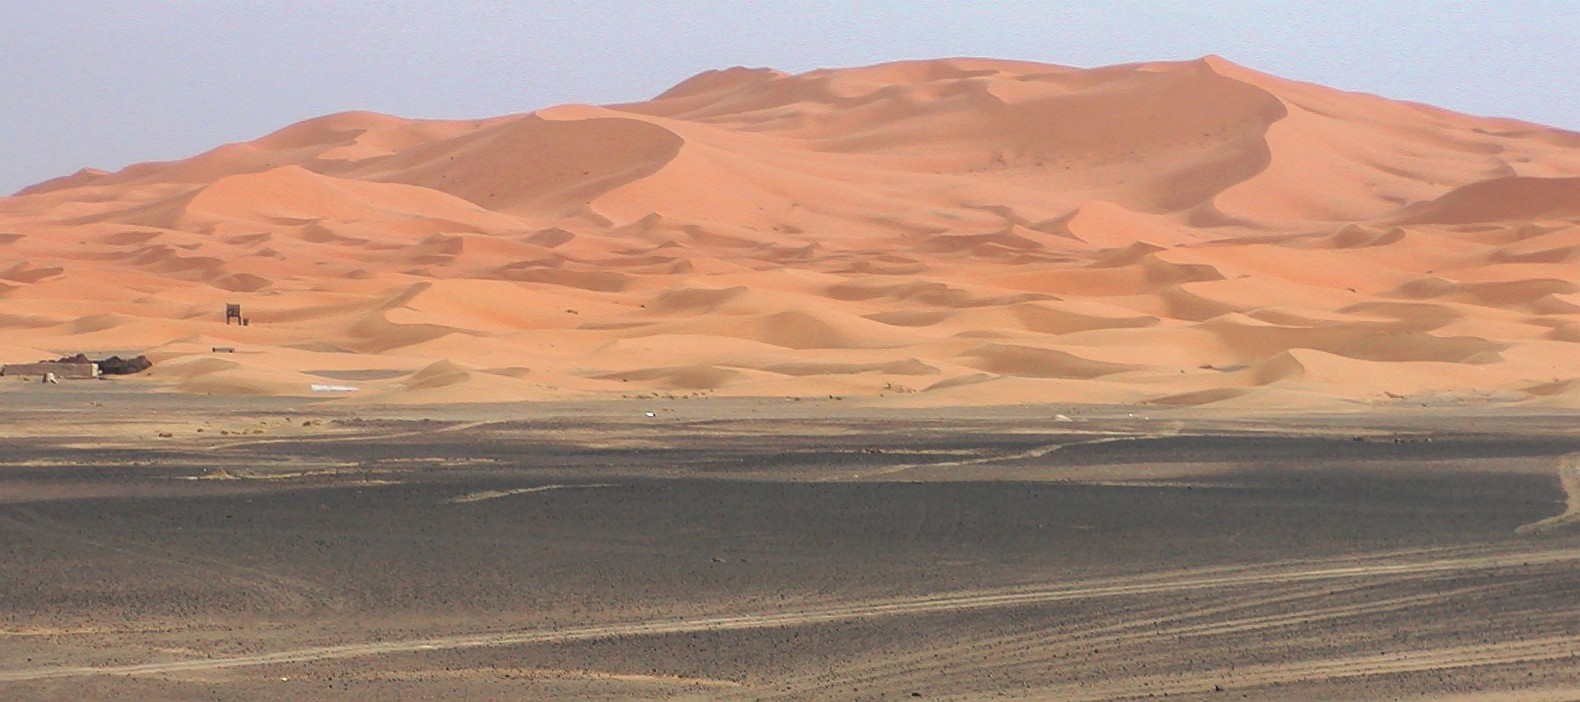 Erg Chebbi  |  Dune field